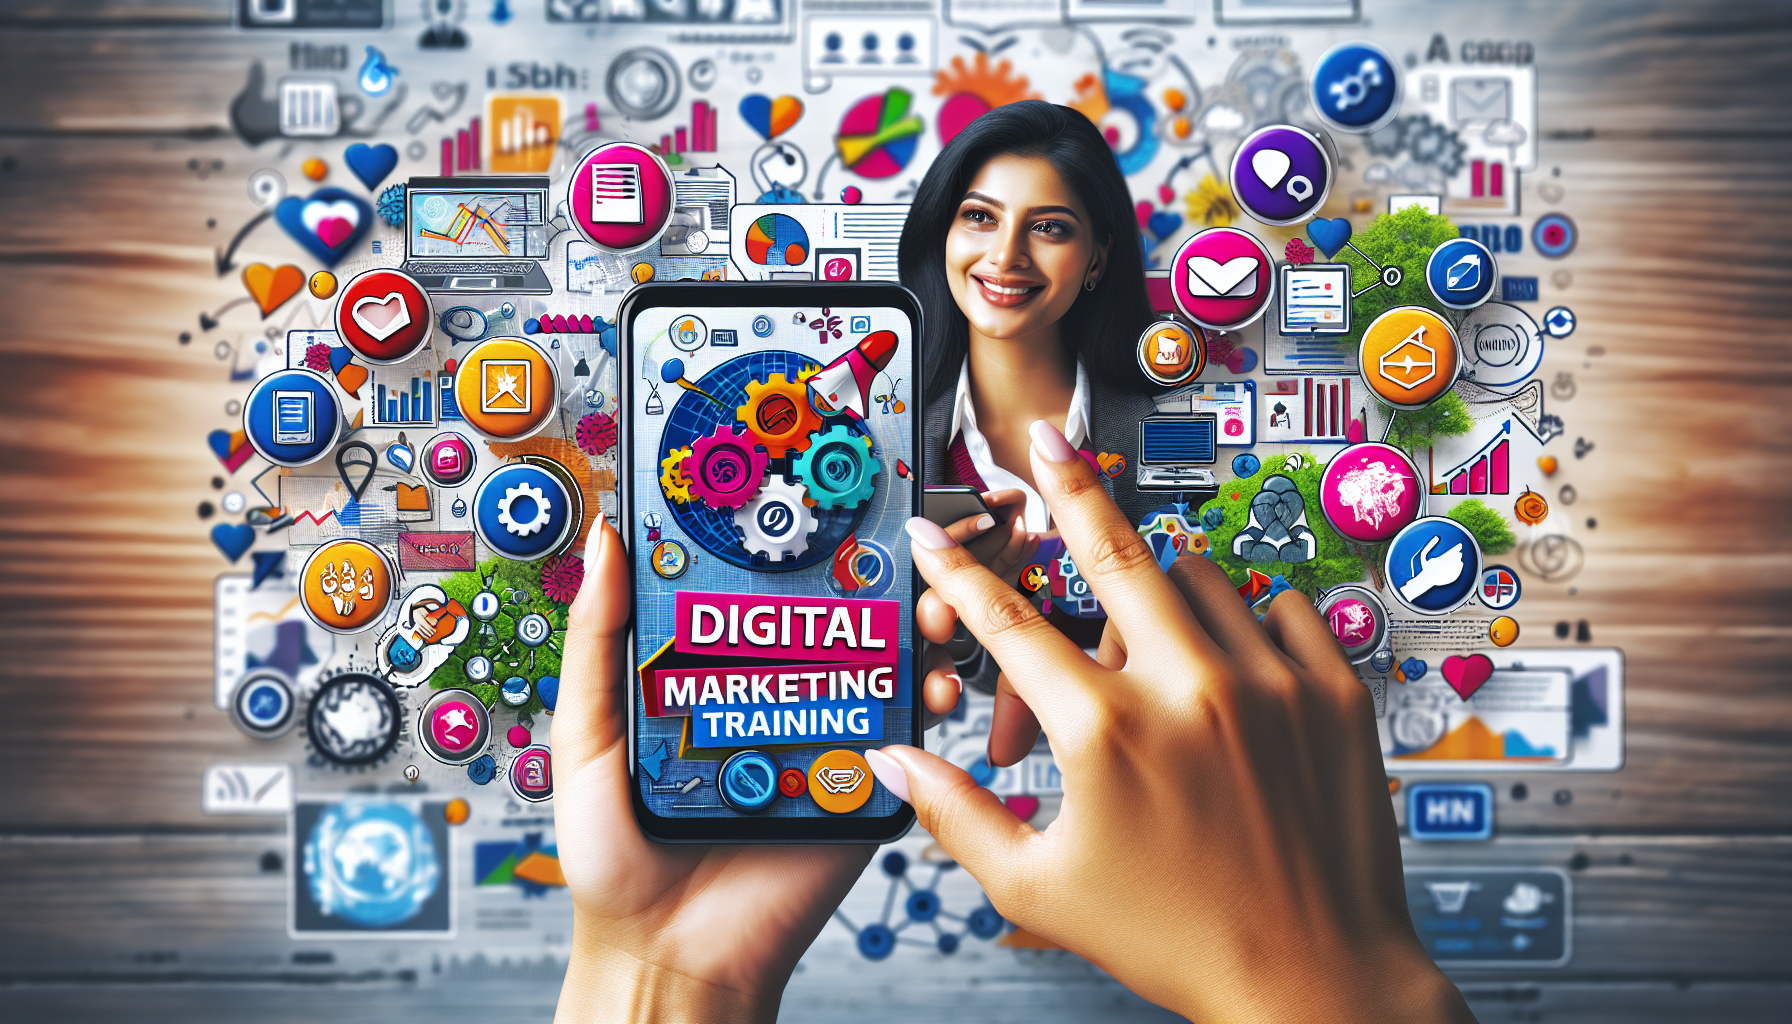 découvrez nos formations en marketing digital axées sur les stratégies pour les appareils mobiles. apprenez à exploiter tout le potentiel du marketing sur mobile pour votre entreprise.